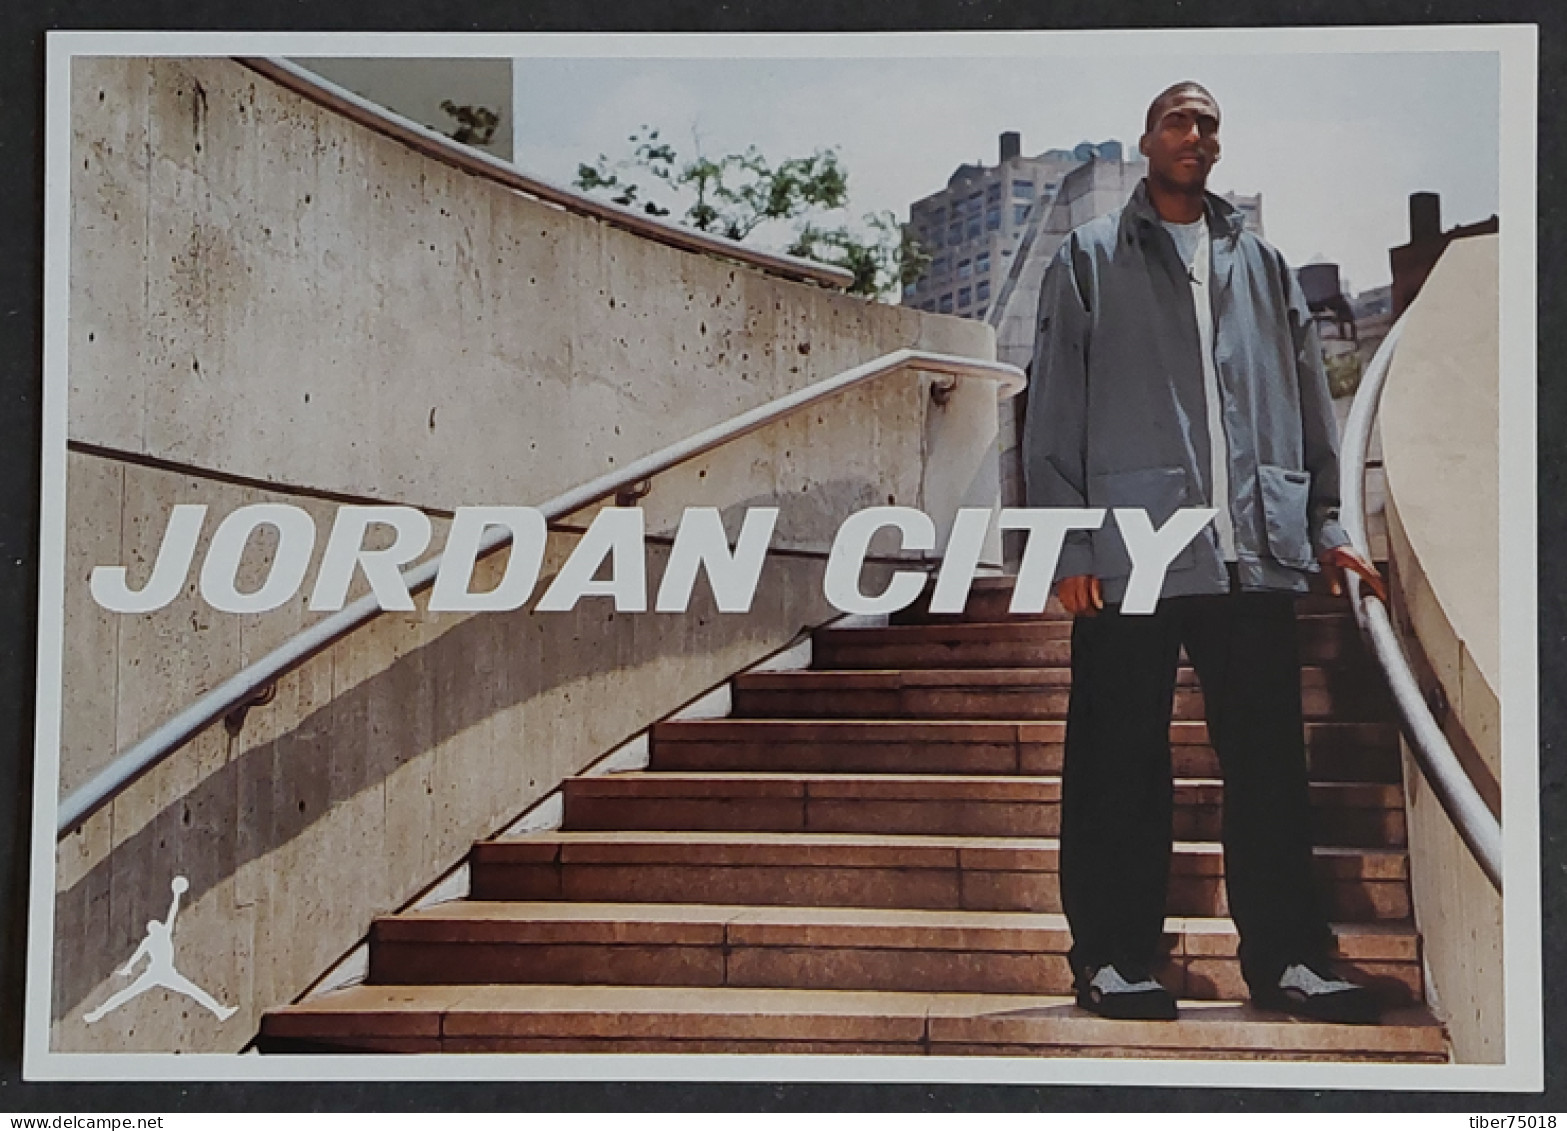 Carte Postale - Jordan City - Eddie Jones (basket-ball) Wears The 3-on-1 Fast Break Jacket - Publicité